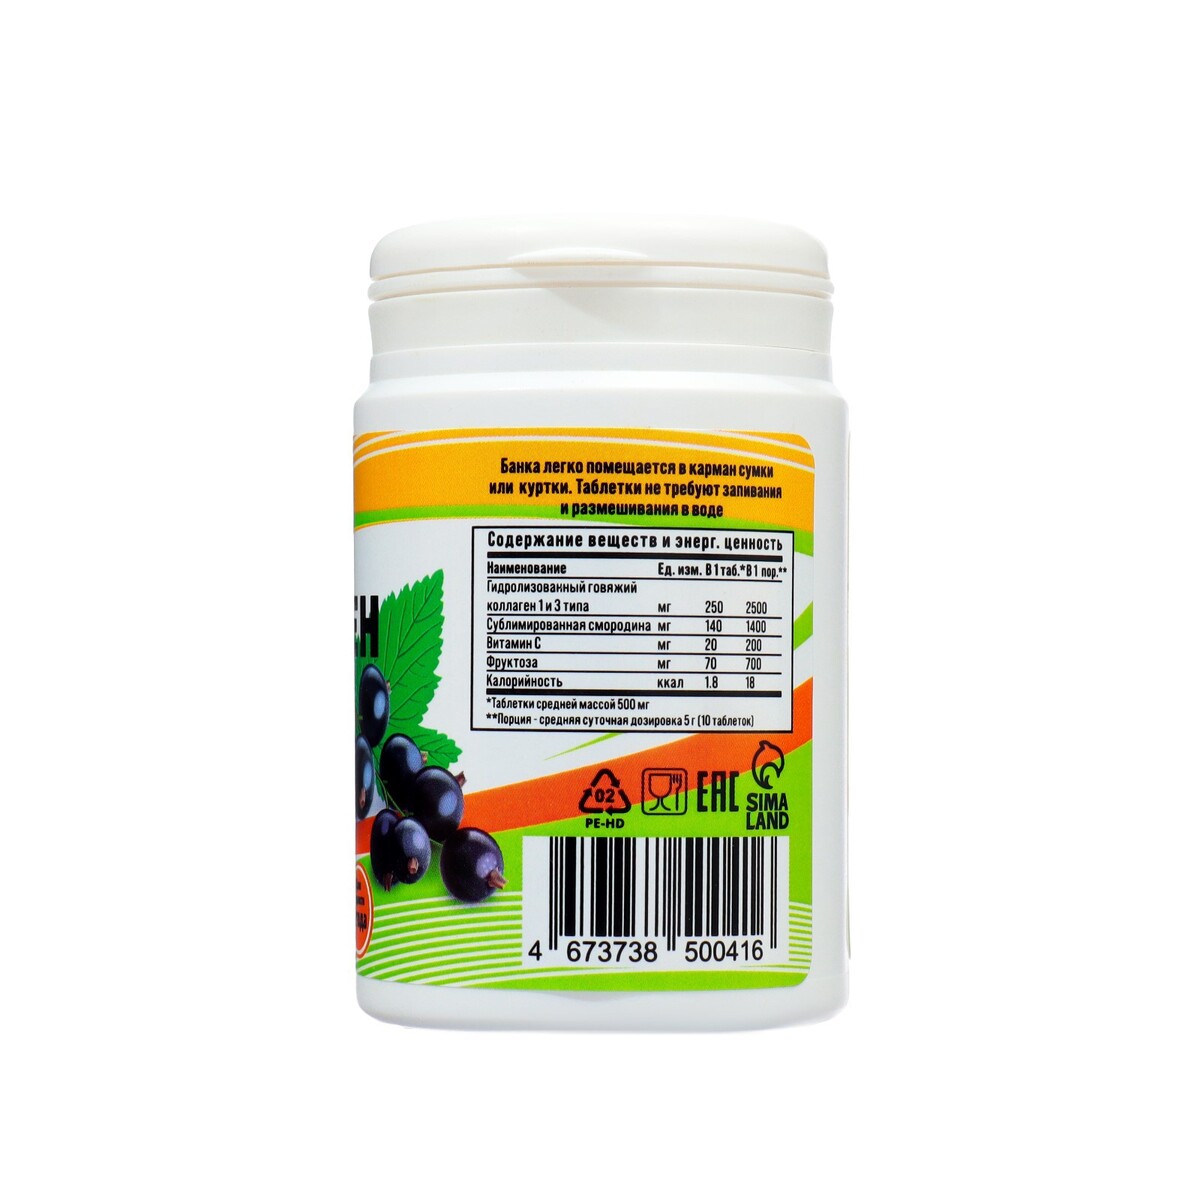 Коллаген жевательный vitamuno с натуральной смородиной, 100 таблеток по 500 мг Vitamuno 08129603 - фото 3